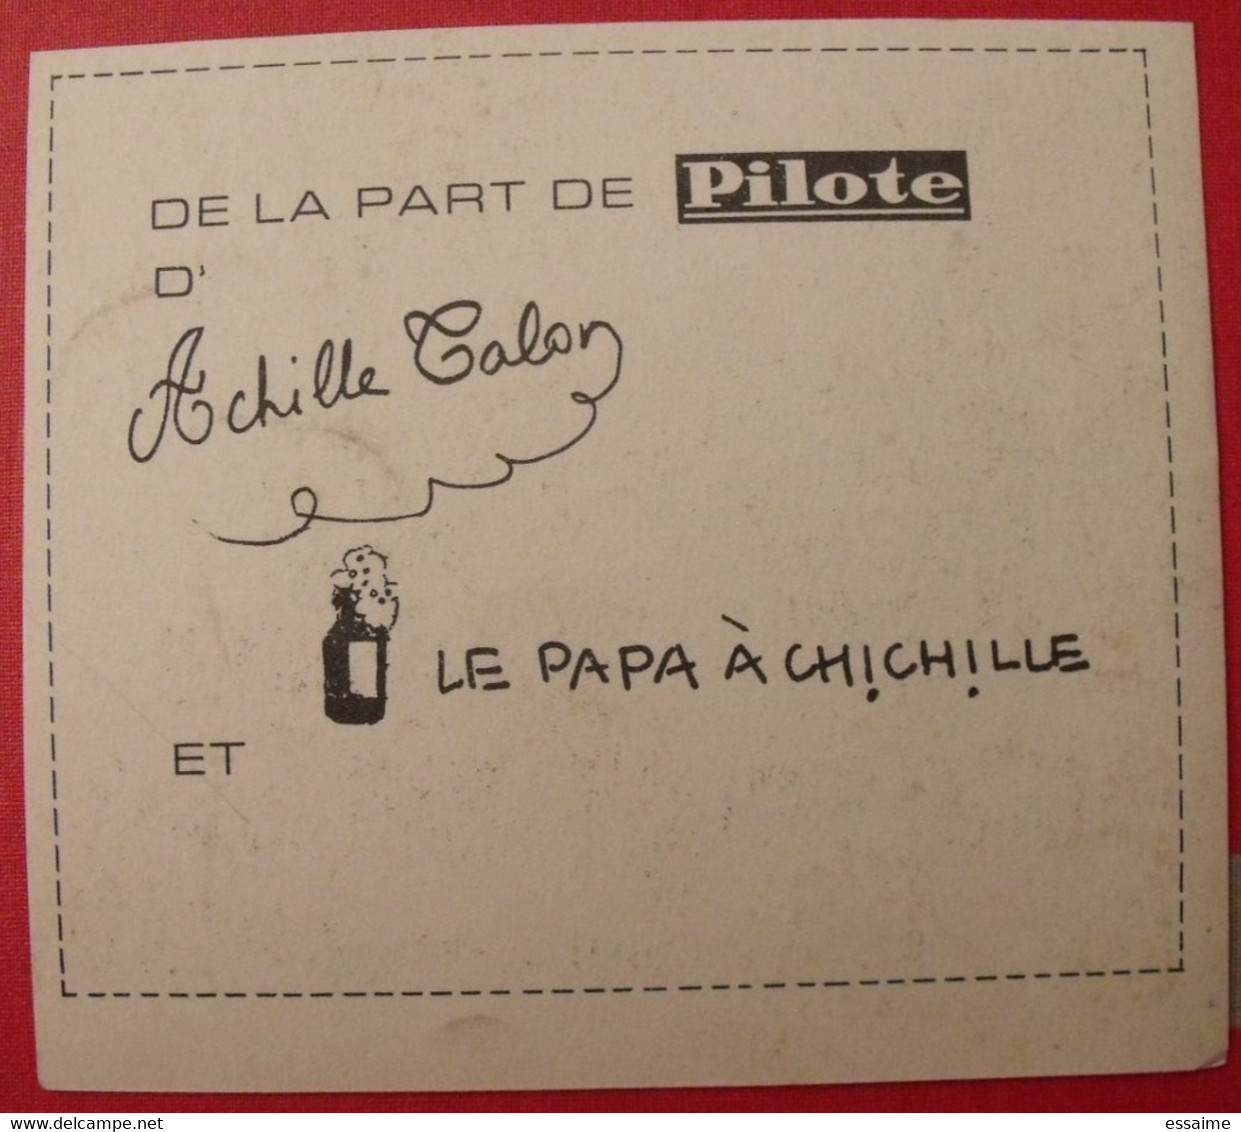 Achille Talon Par Greg. Carte De Voeux 1967. Supplément Au N° 372 De Pilote. - Pilote